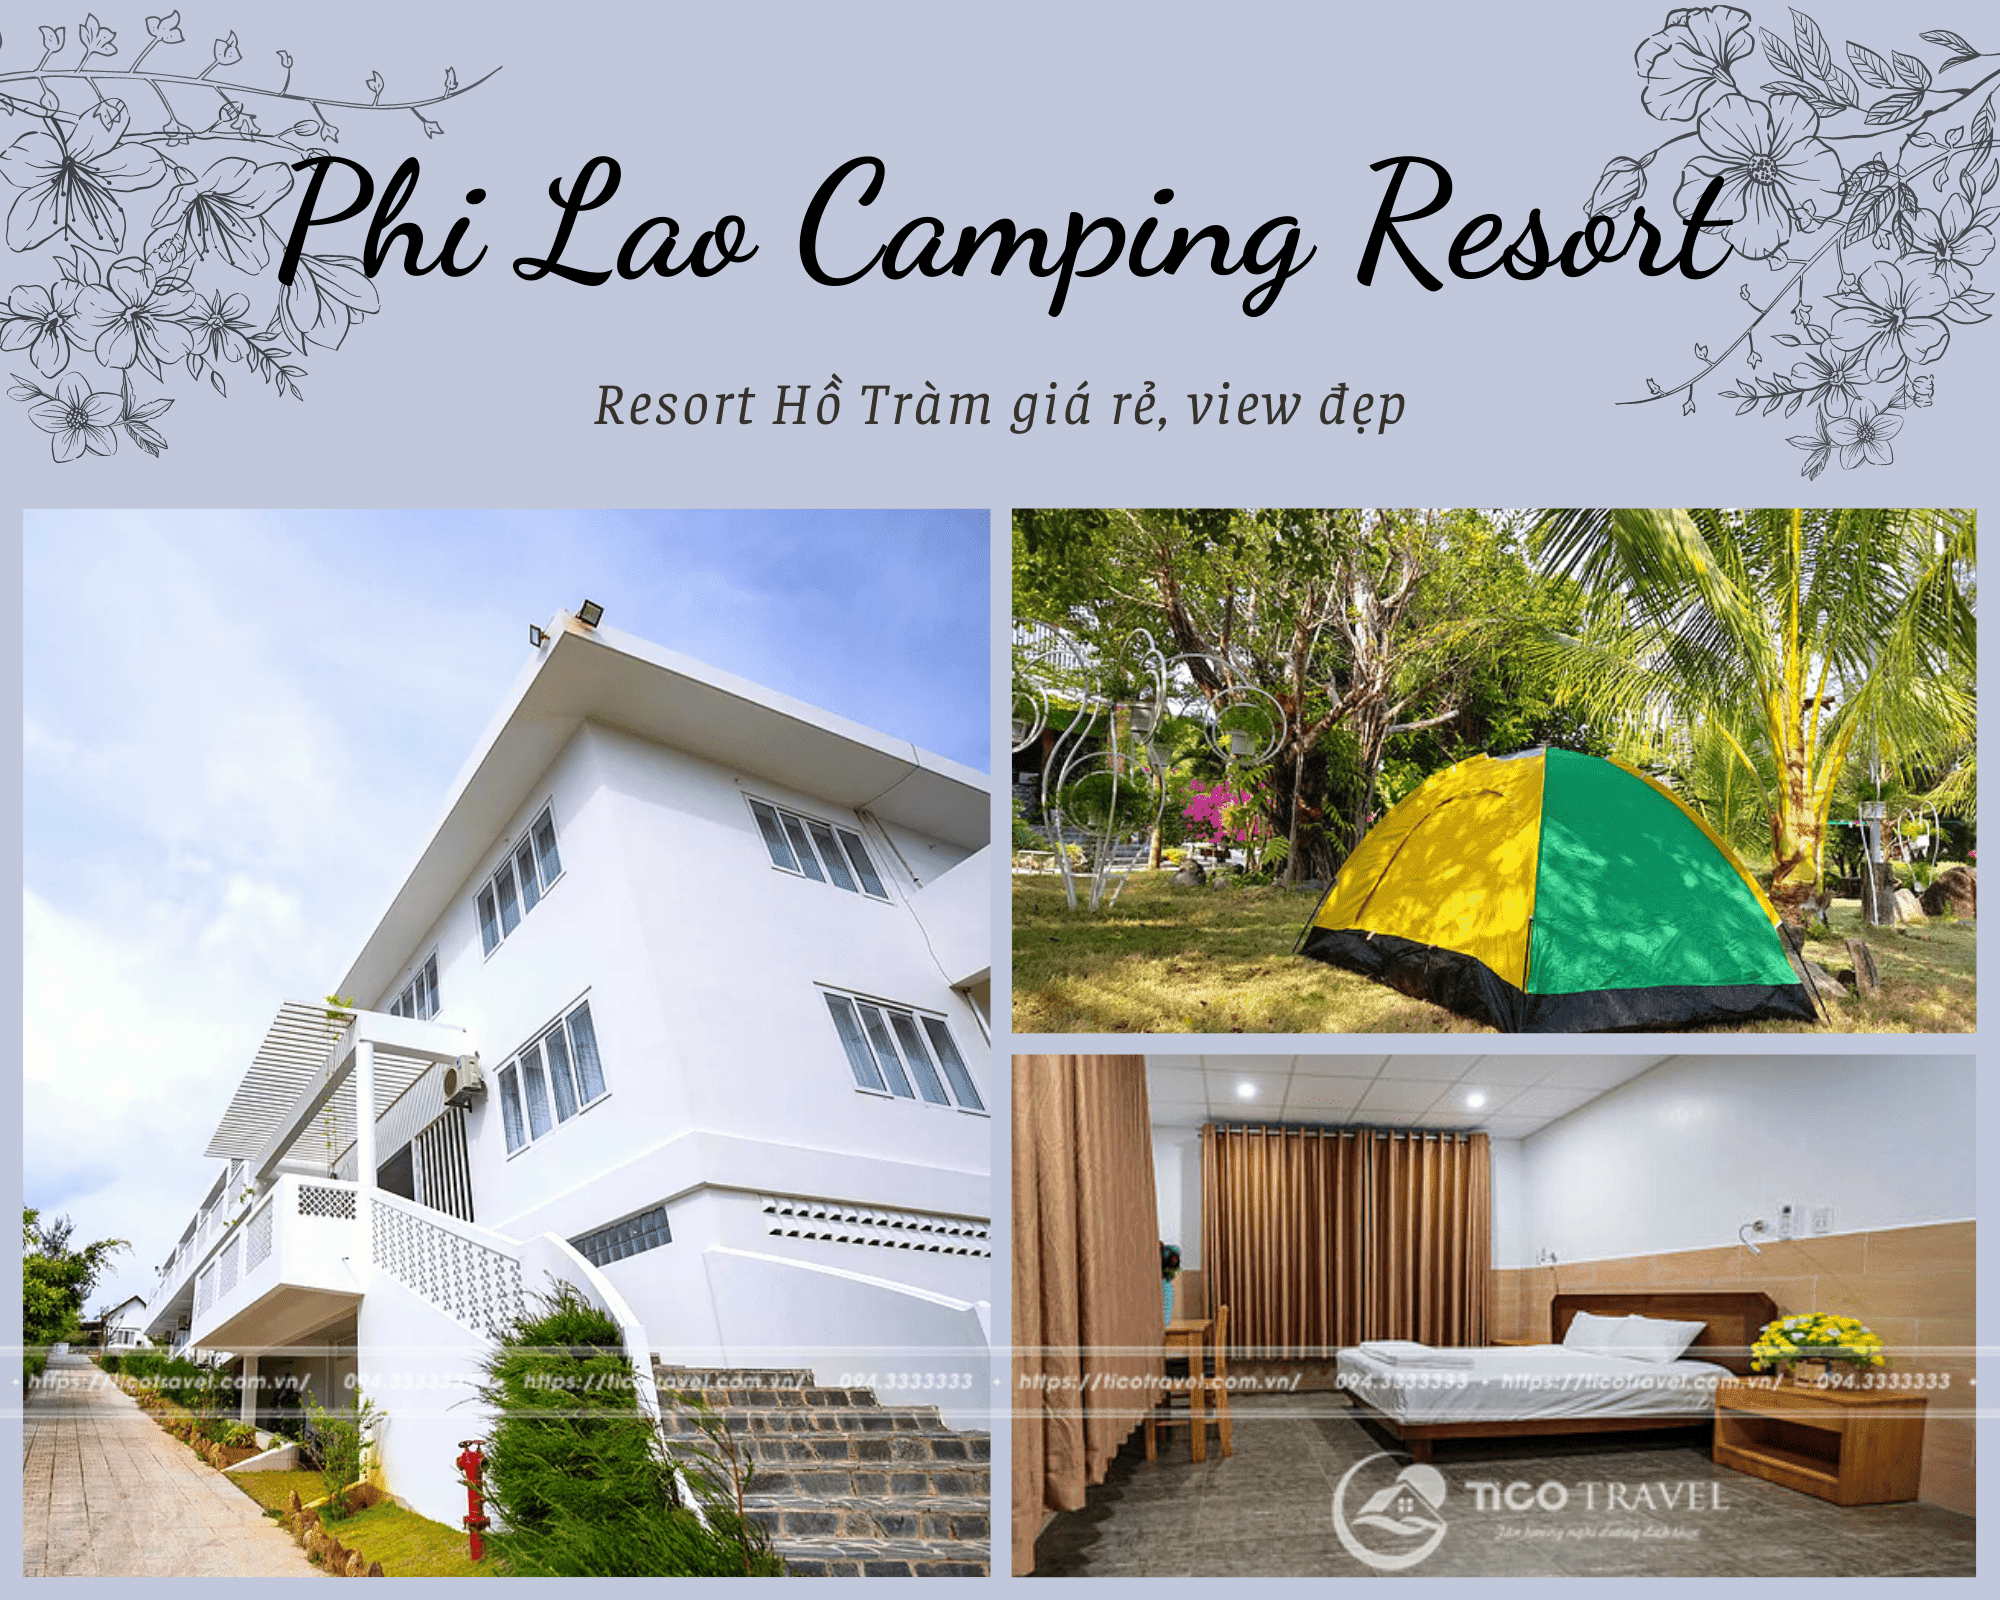 Phi Lao Camping Resort